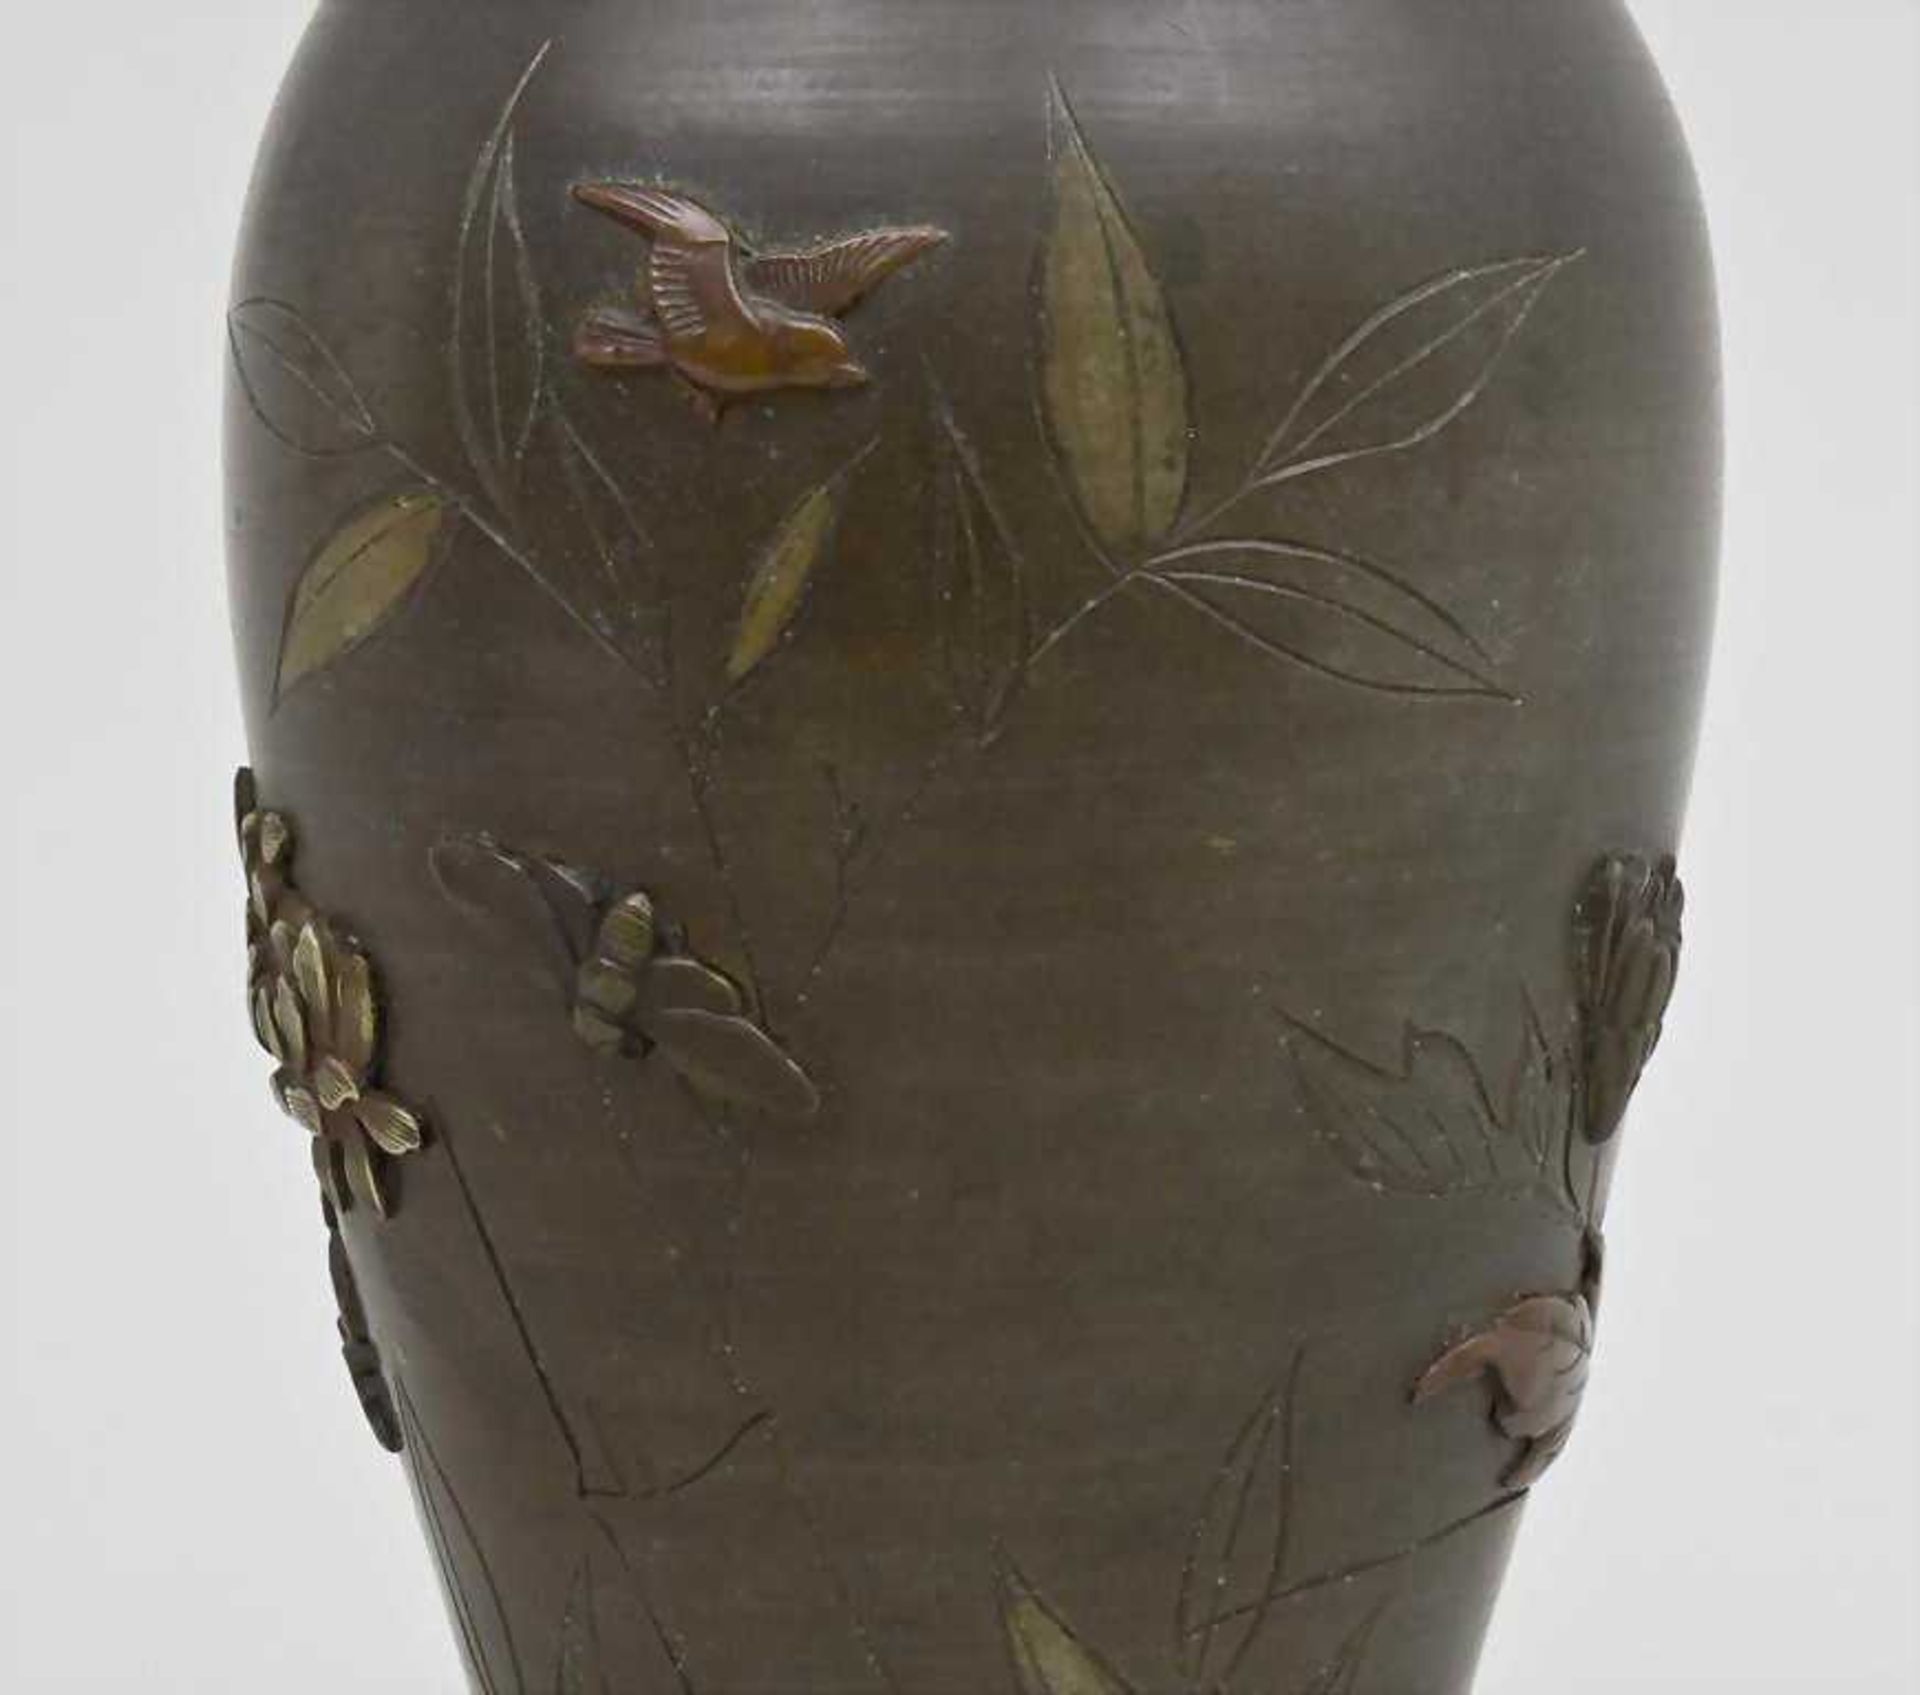 Vase, Meiji-Periode, Japan, Ende 19. Jh. konische Form mit leicht ausgestelltem Rand. Umlaufend sehr - Bild 4 aus 4